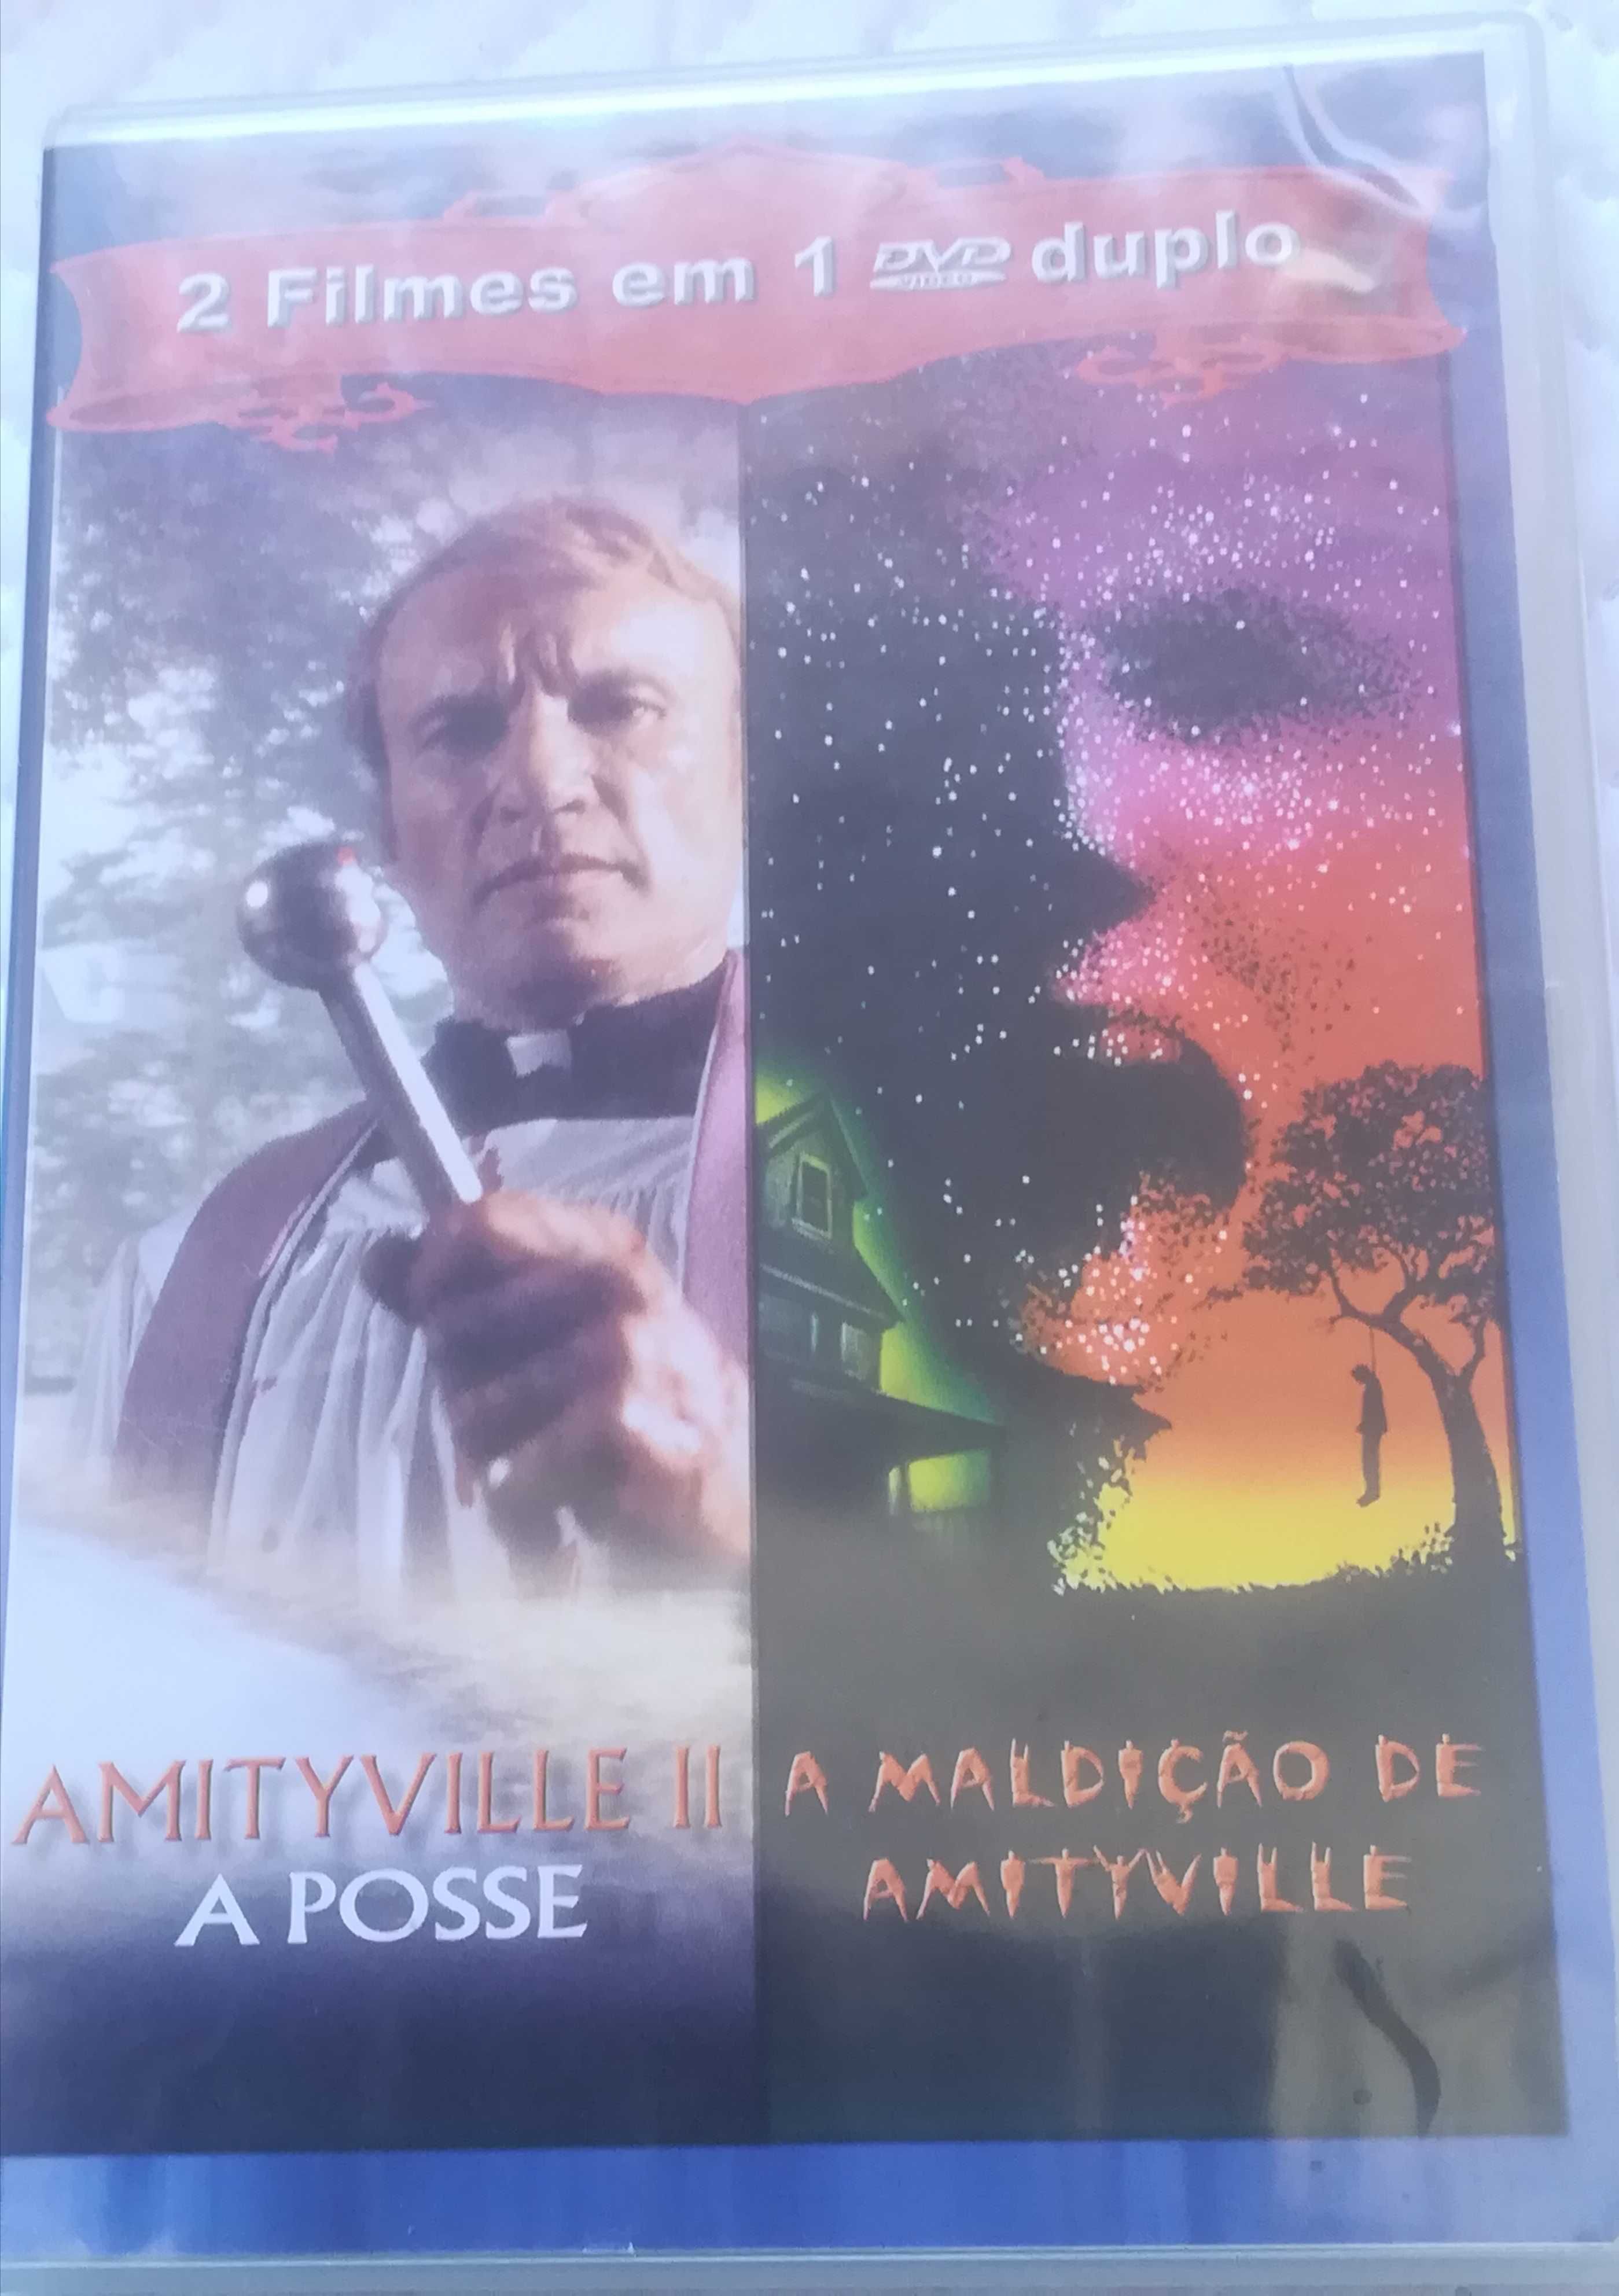 Portes grátis Dvd duplo Amityville II e A Posse de Amityville